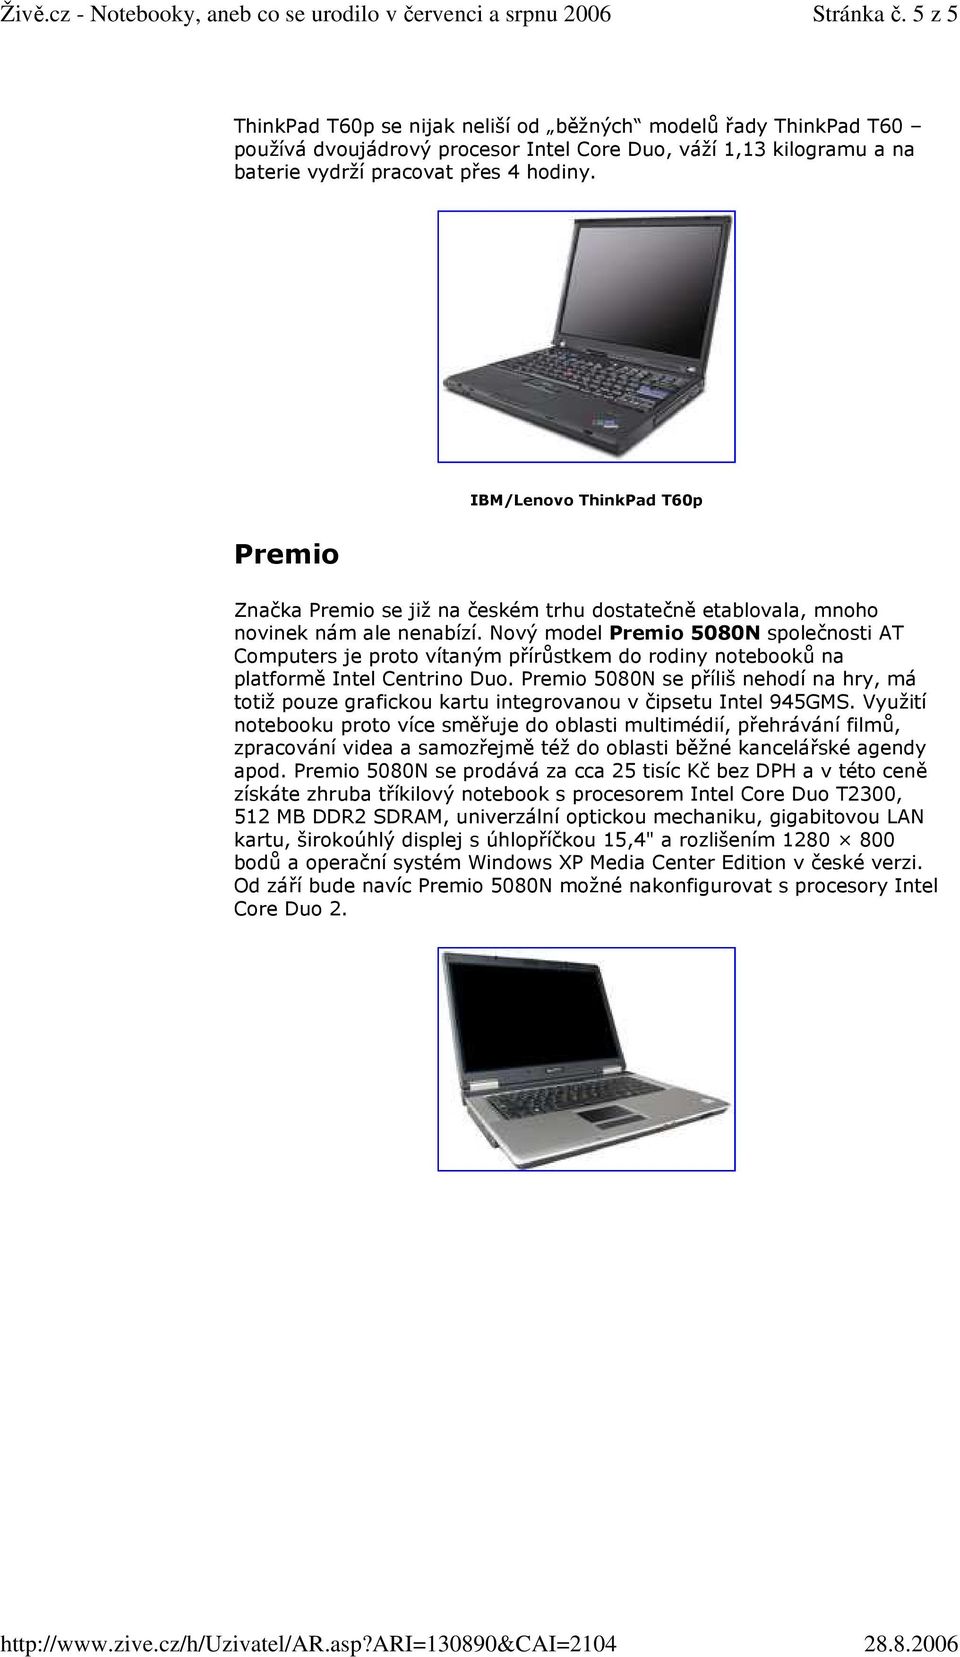 Nový model Premio 5080N společnosti AT Computers je proto vítaným přírůstkem do rodiny notebooků na platformě Intel Centrino Duo.